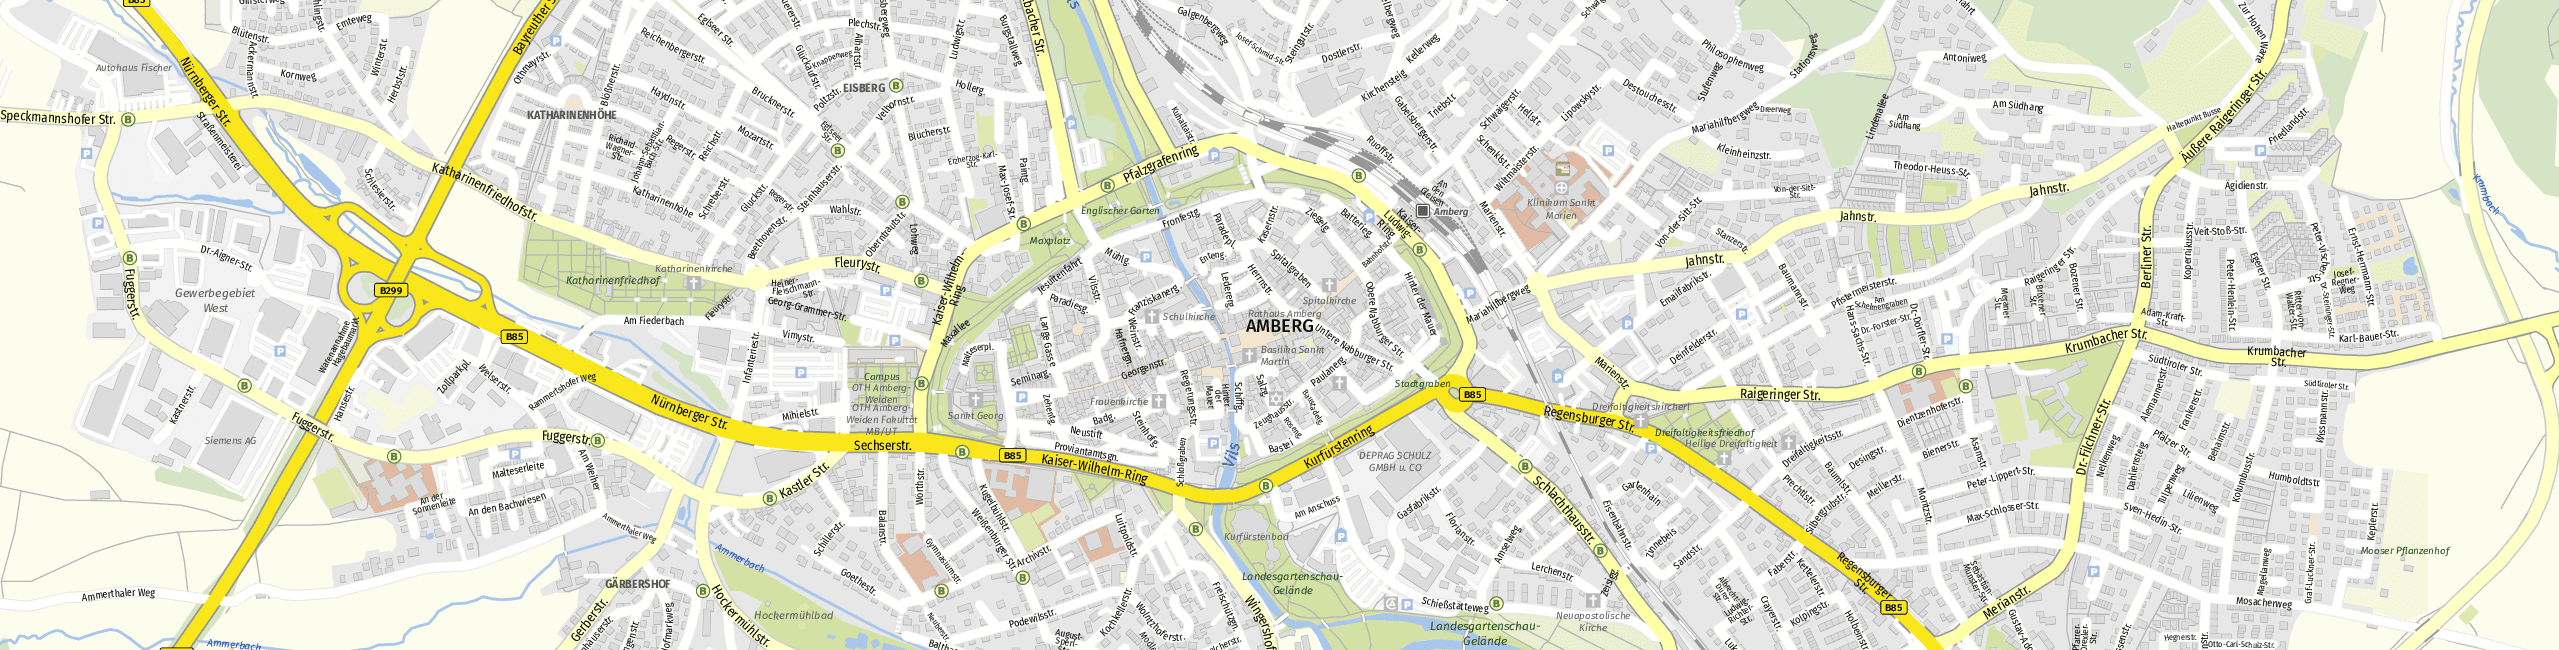 Stadtplan Amberg zum Downloaden.